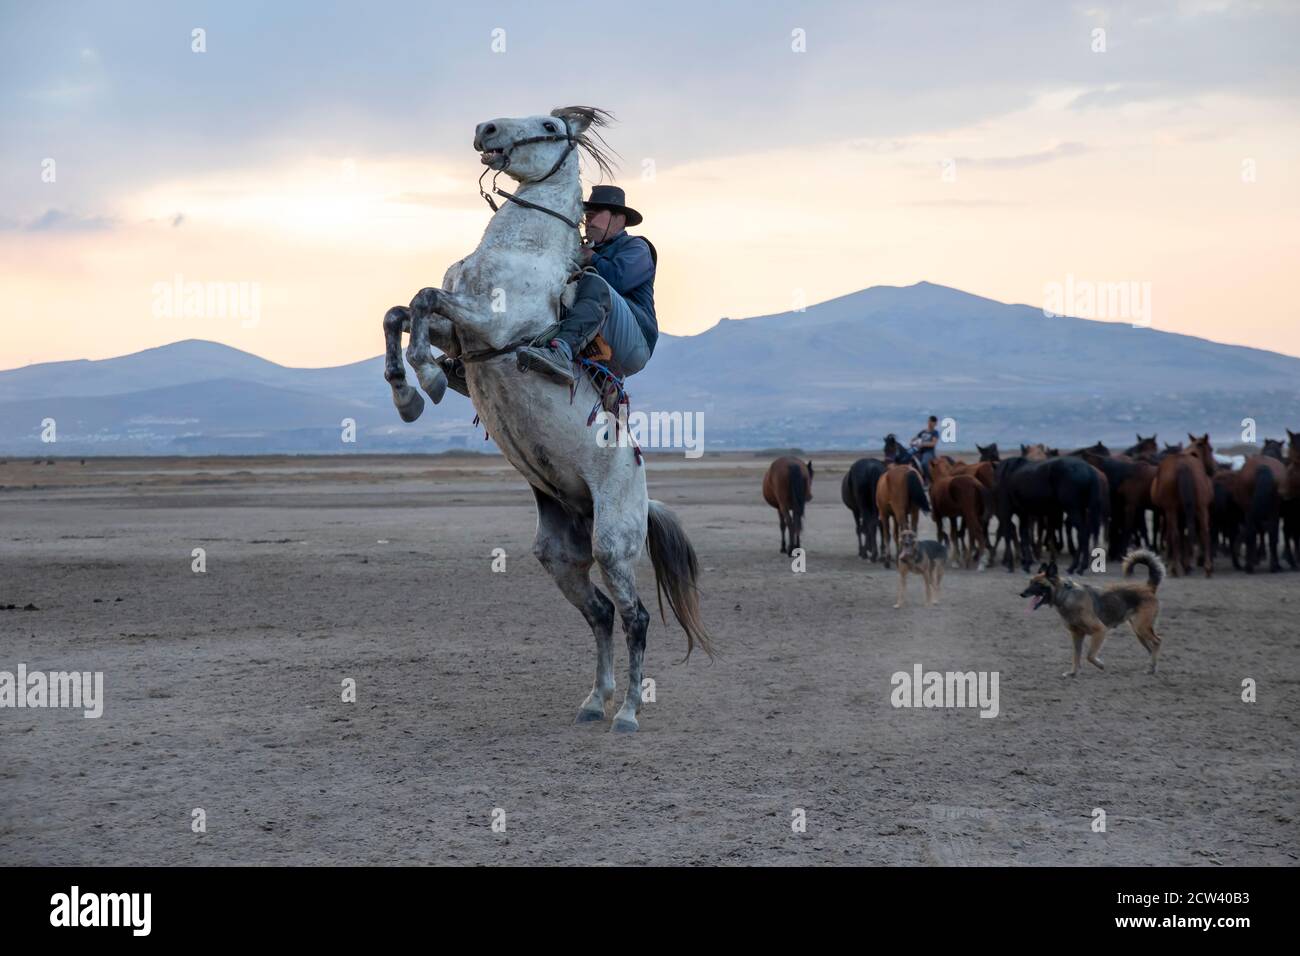 Cowboy on rearing horse, wild horses . Horses - Yilki Atlari live in Cappadocia and Kayseri, in Central Anatolian region of Turkey. Stock Photo